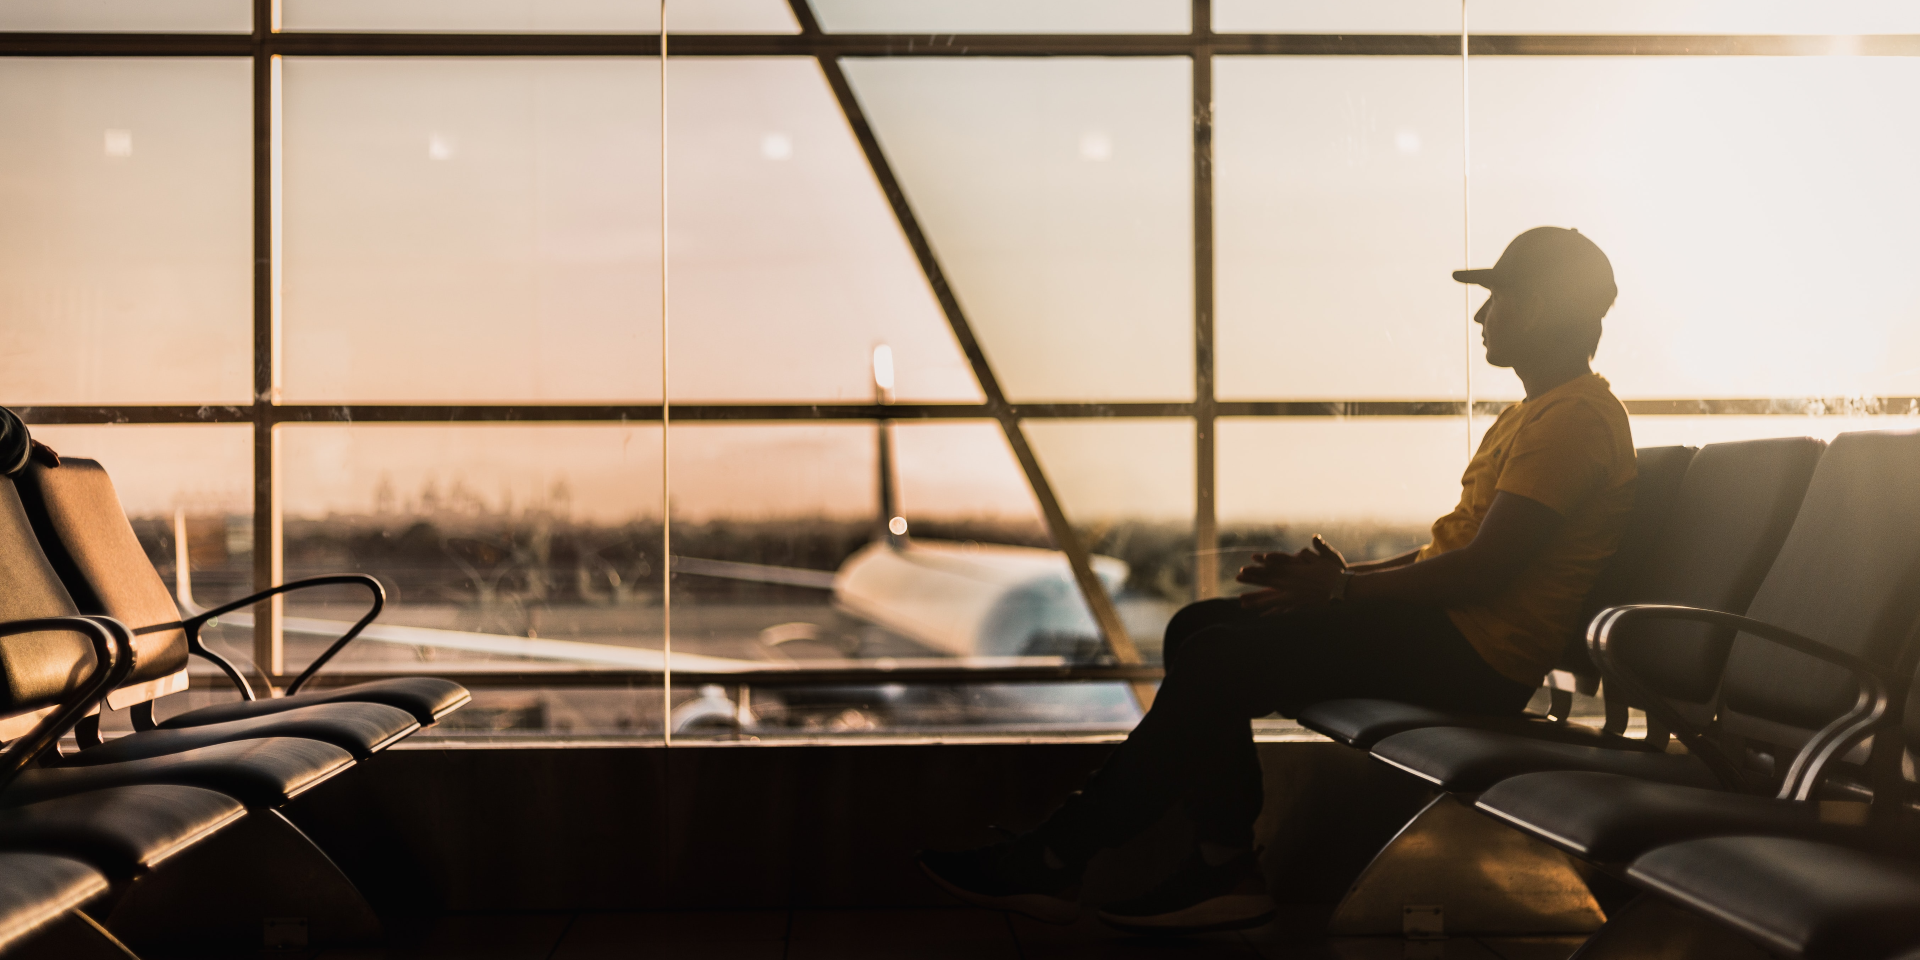 Un homme attend son vol à l’aéroport.